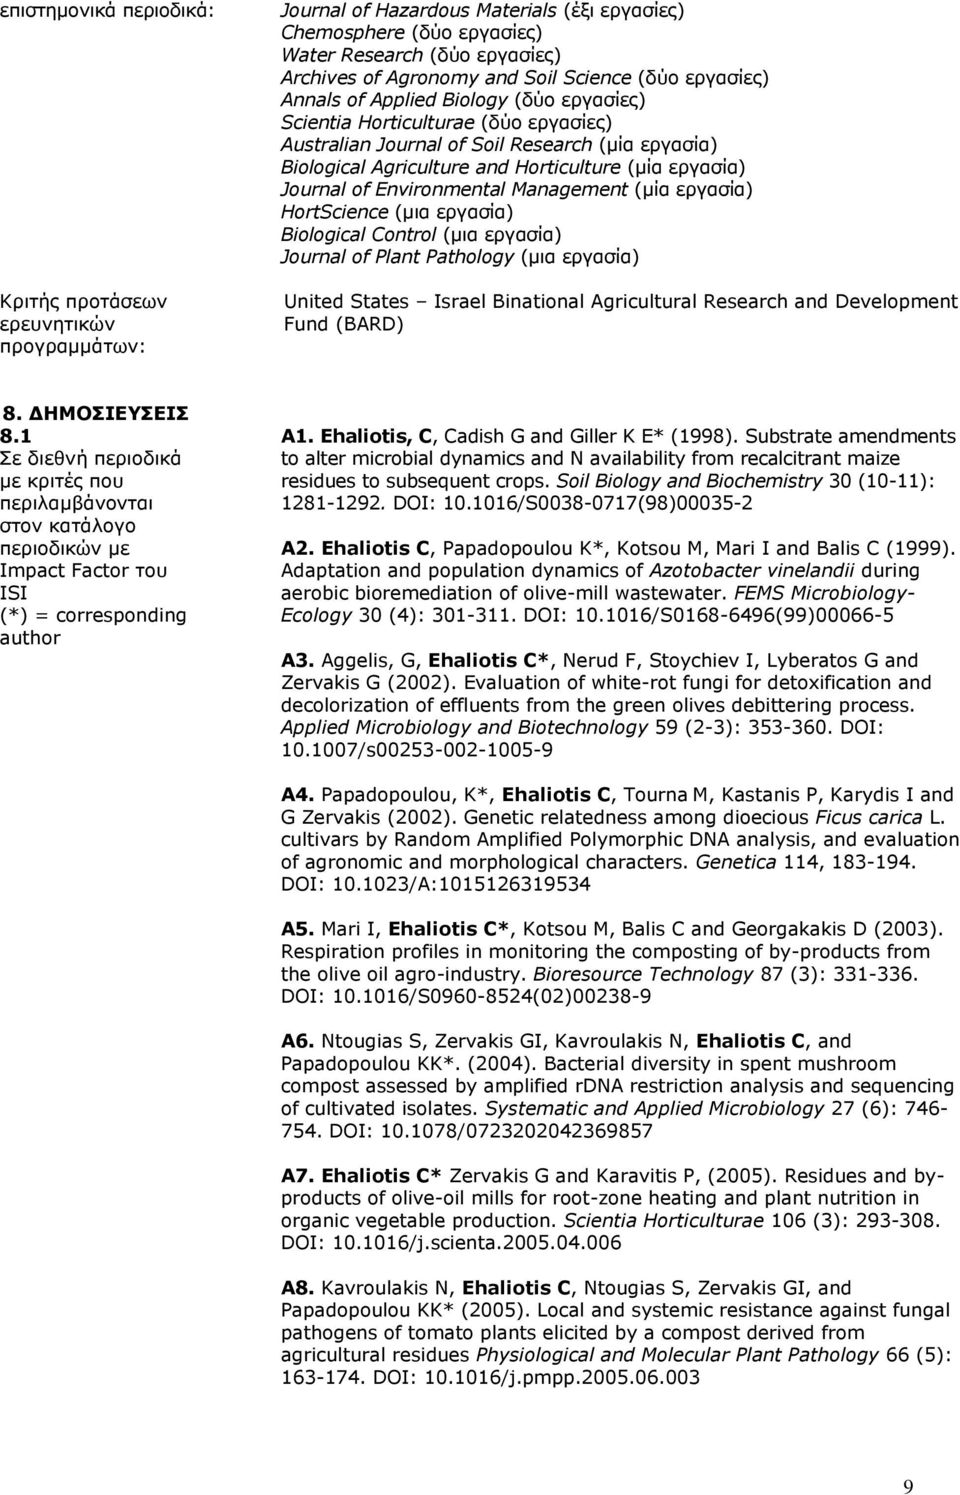 εργασία) Journal of Environmental Management (μία εργασία) HortScience (μια εργασία) Biological Control (μια εργασία) Journal of Plant Pathology (μια εργασία) United States Israel Binational